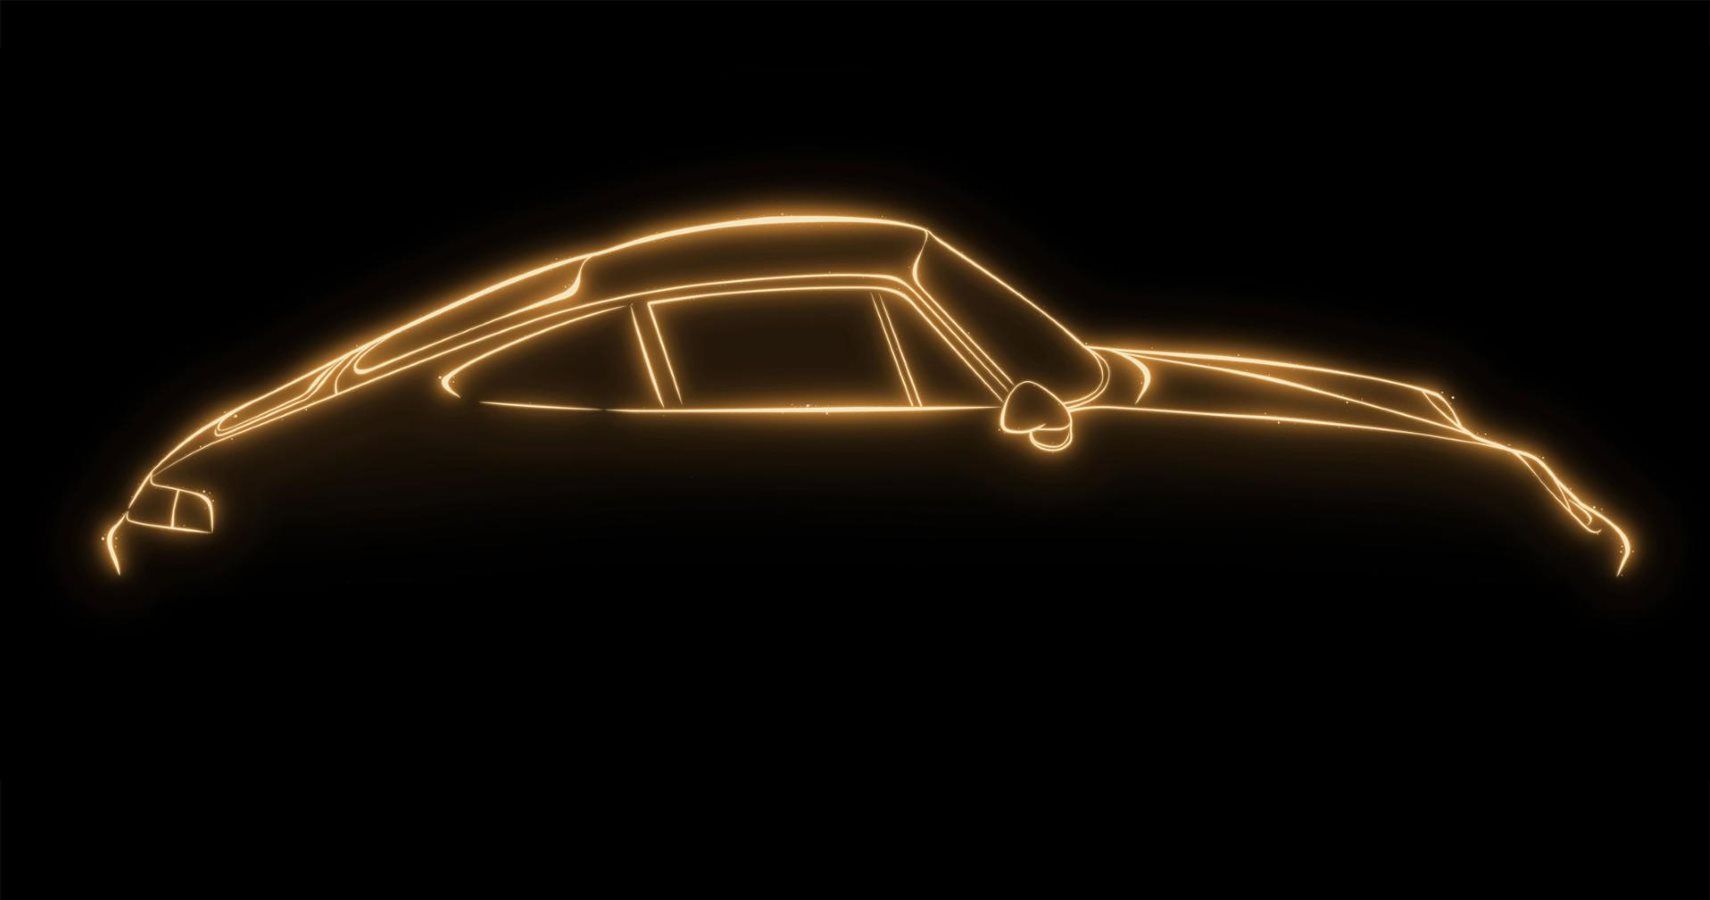 Porsche’s Project Gold Explained